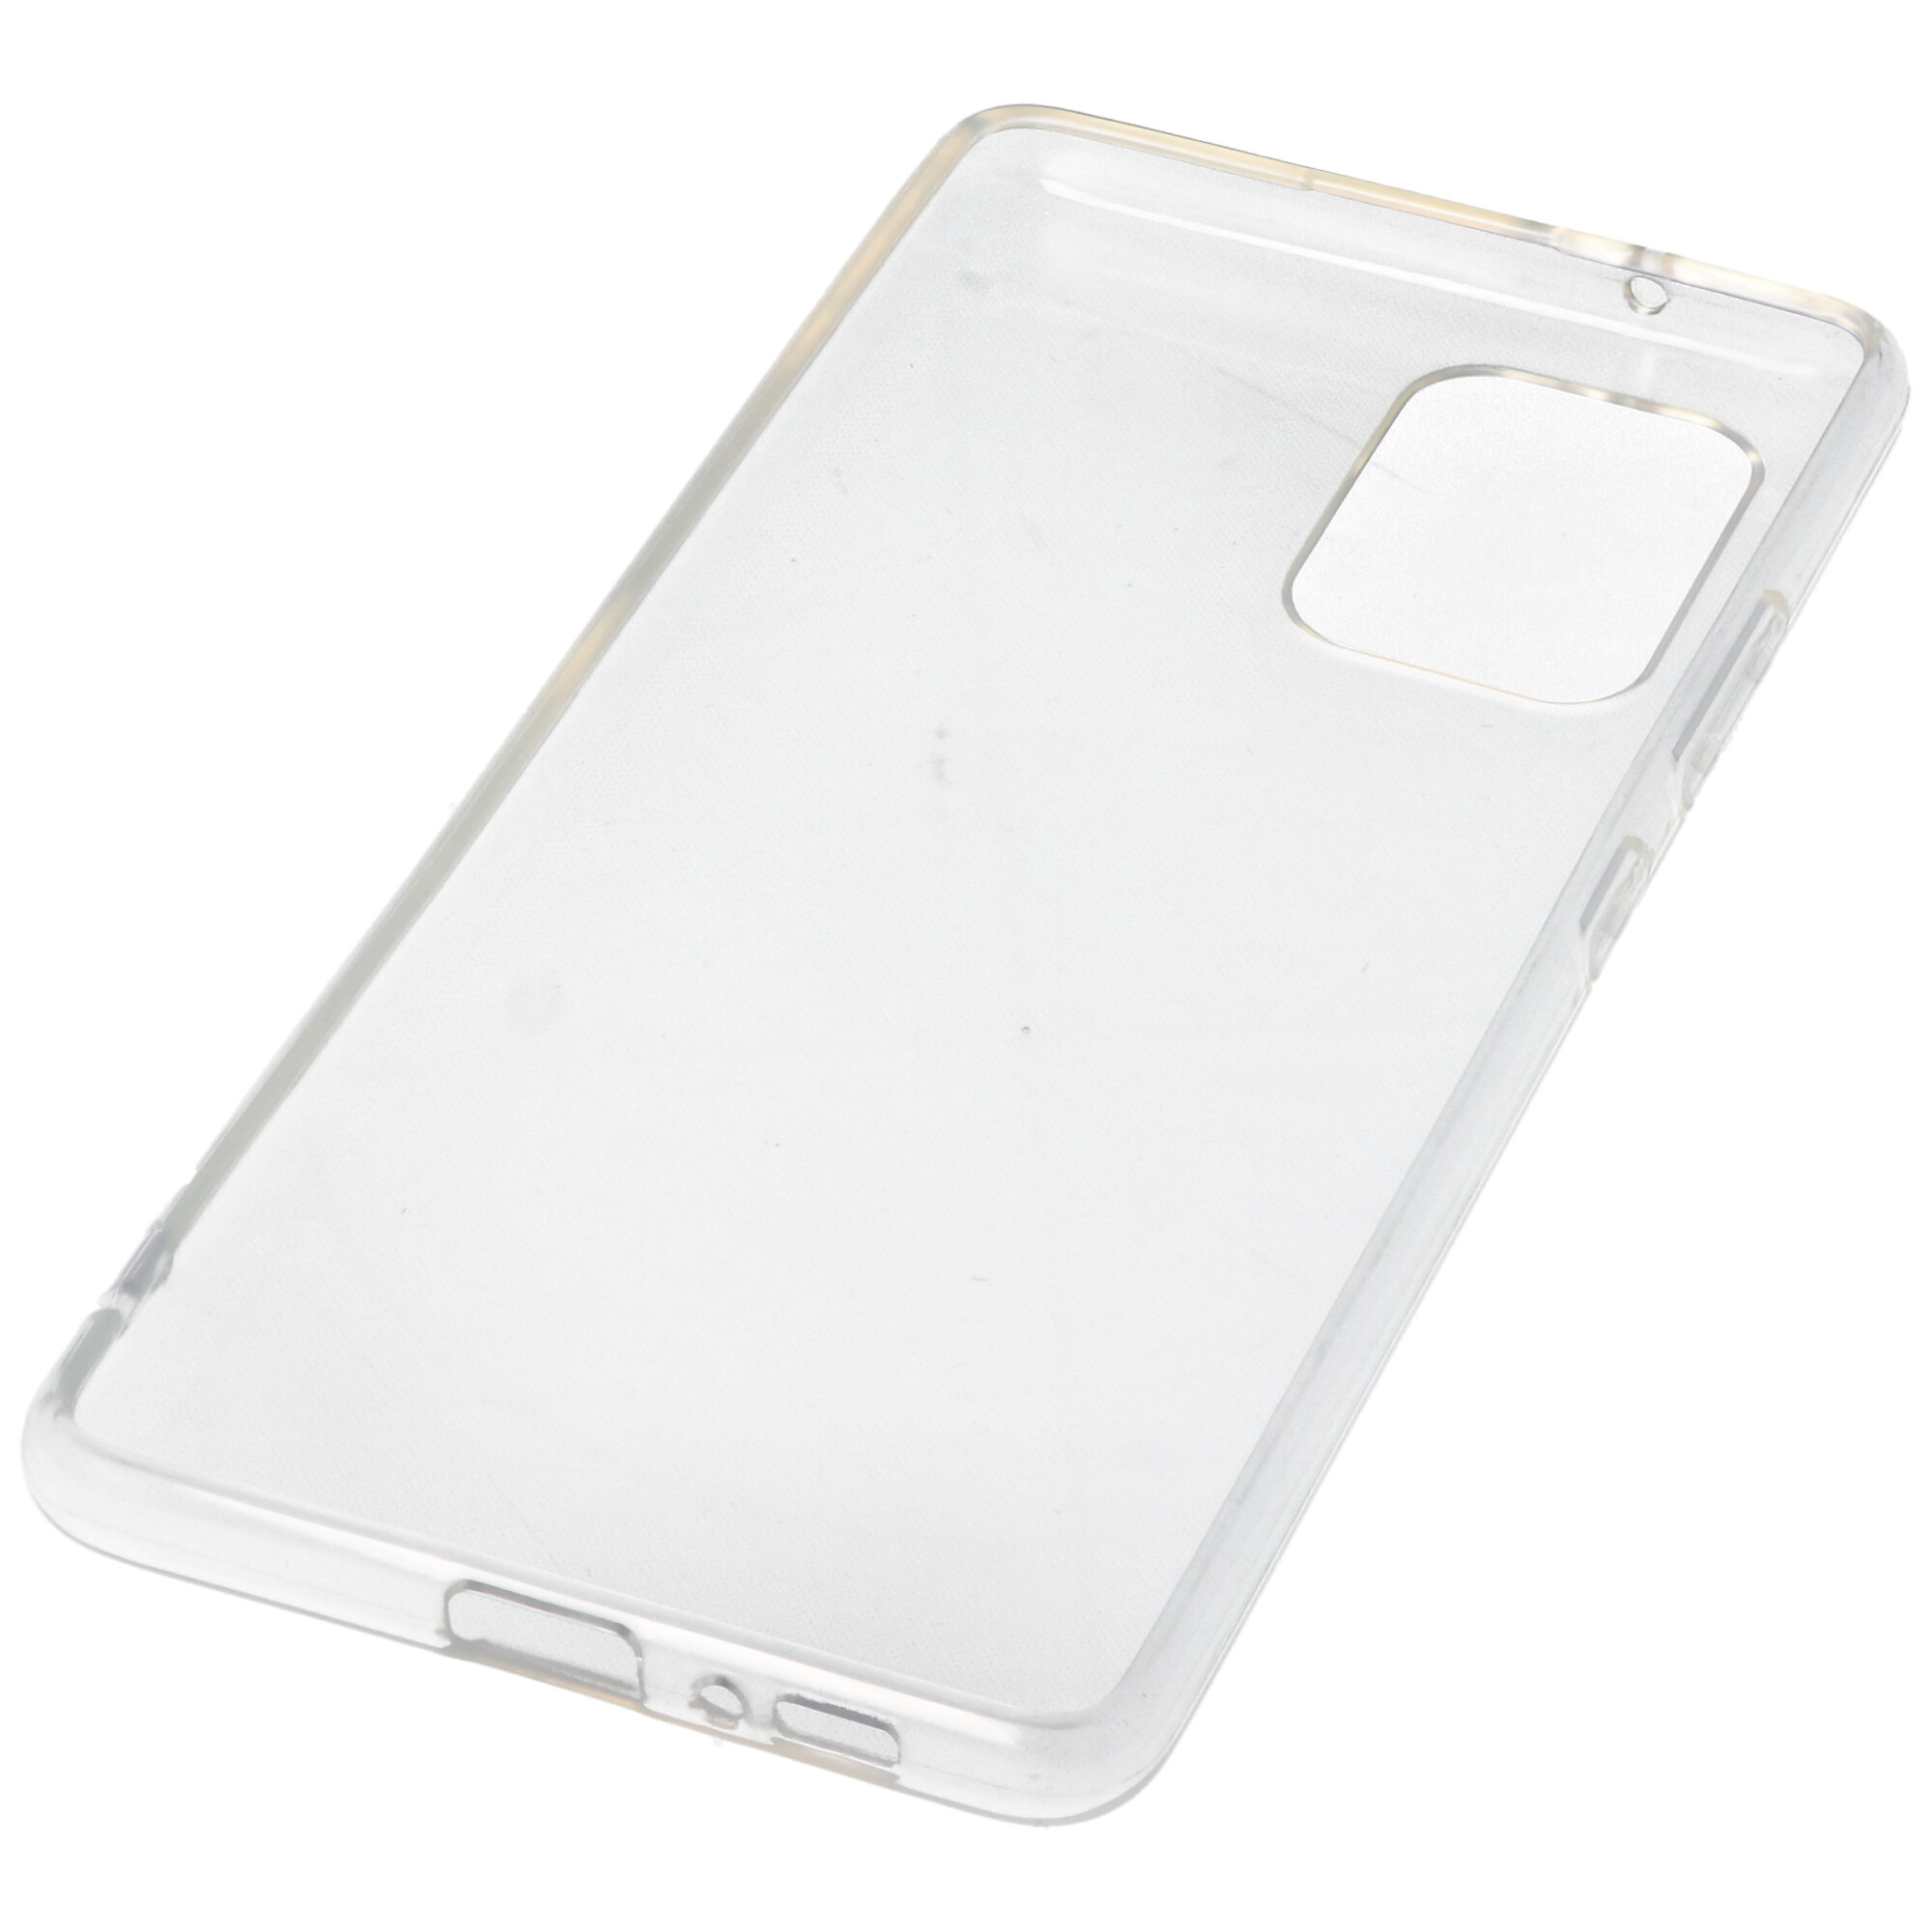 Hülle passend für Samsung Galaxy S10 Lite - transparente Schutzhülle, Anti-Gelb Luftkissen Fallschutz Silikon Handyhülle robustes TPU Case